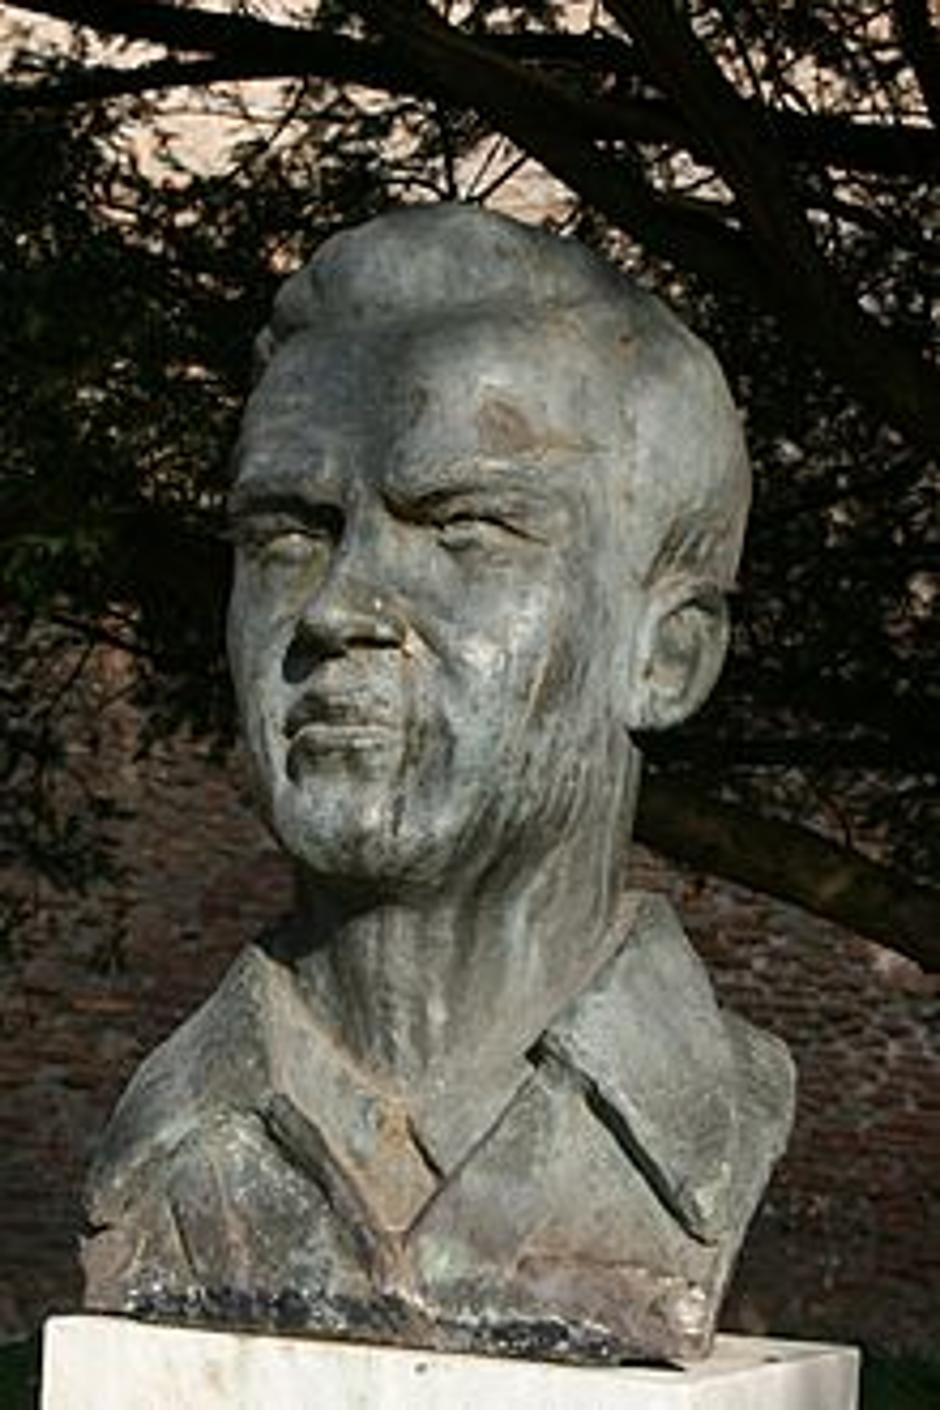 Narodni heroj Ivo Lola Ribar | Author: Wikimedia Commons